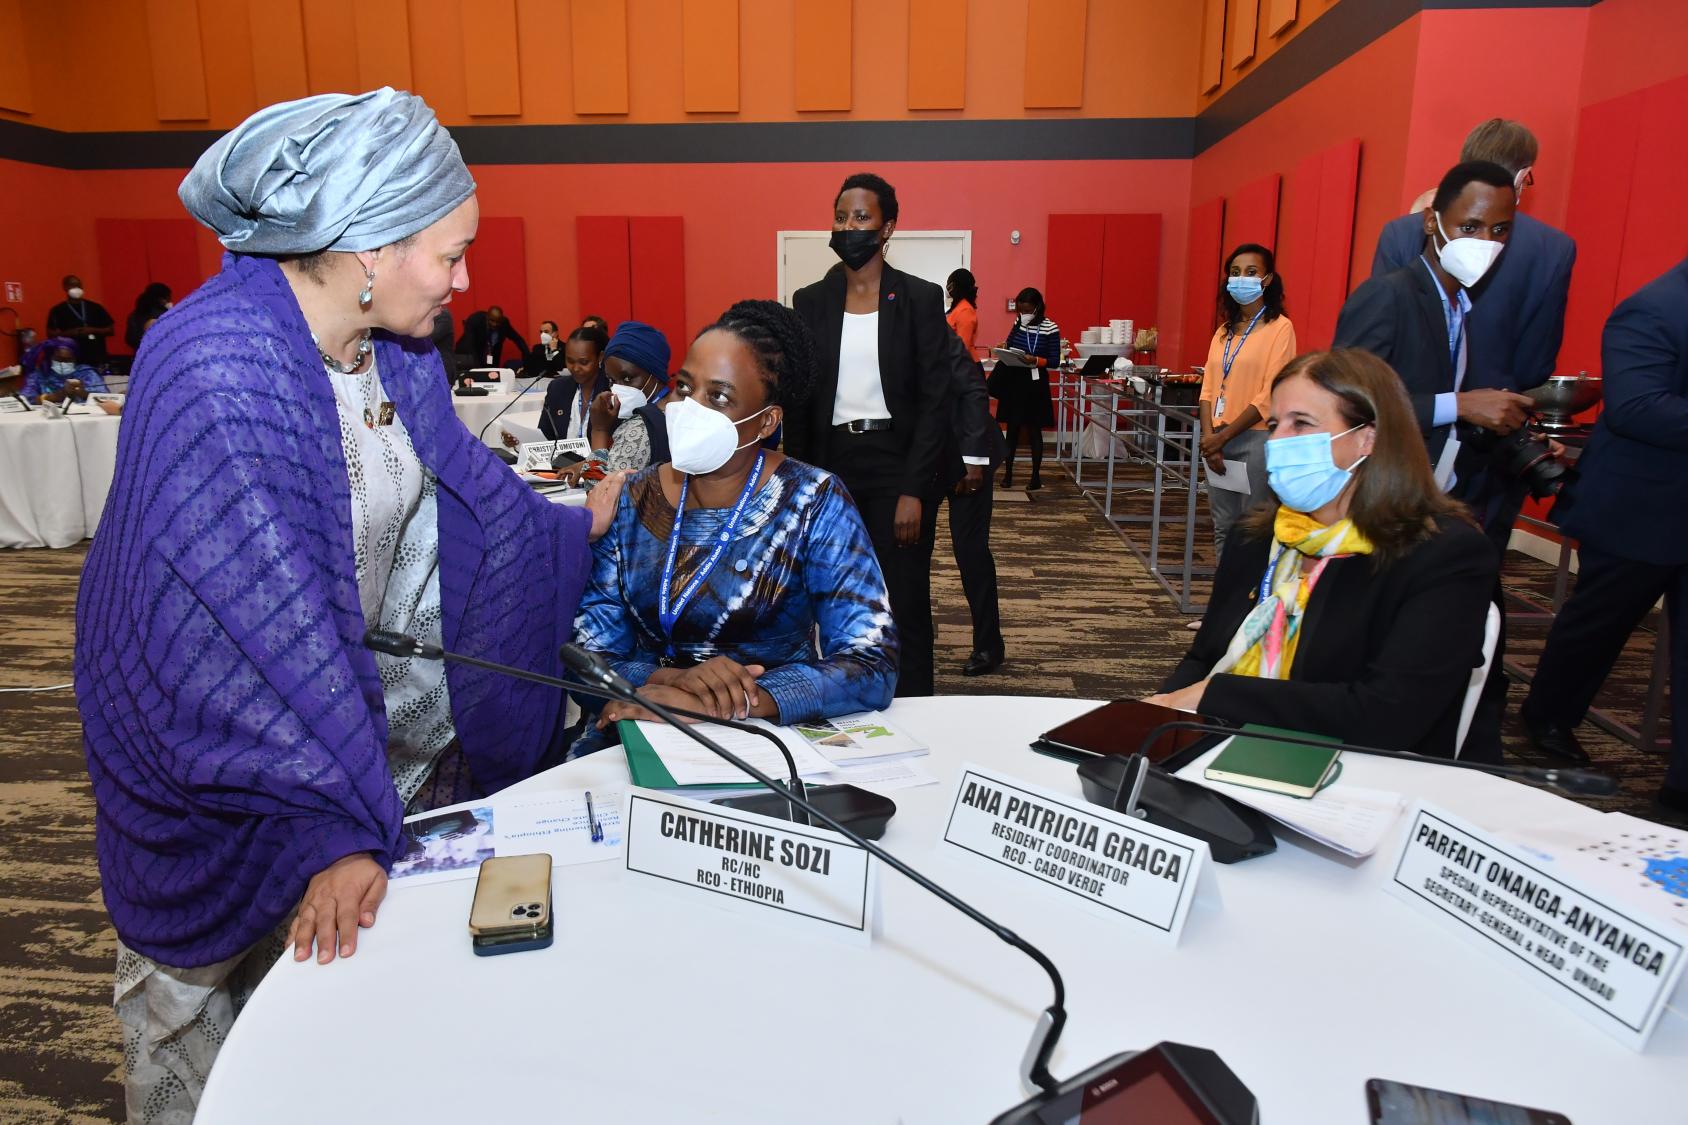 La Vice-Secrétaire générale Amina J. Mohammed a exprimé sa reconnaissance à Catherine Sozi, la Coordinatrice résidente de l’ONU en Éthiopie. 